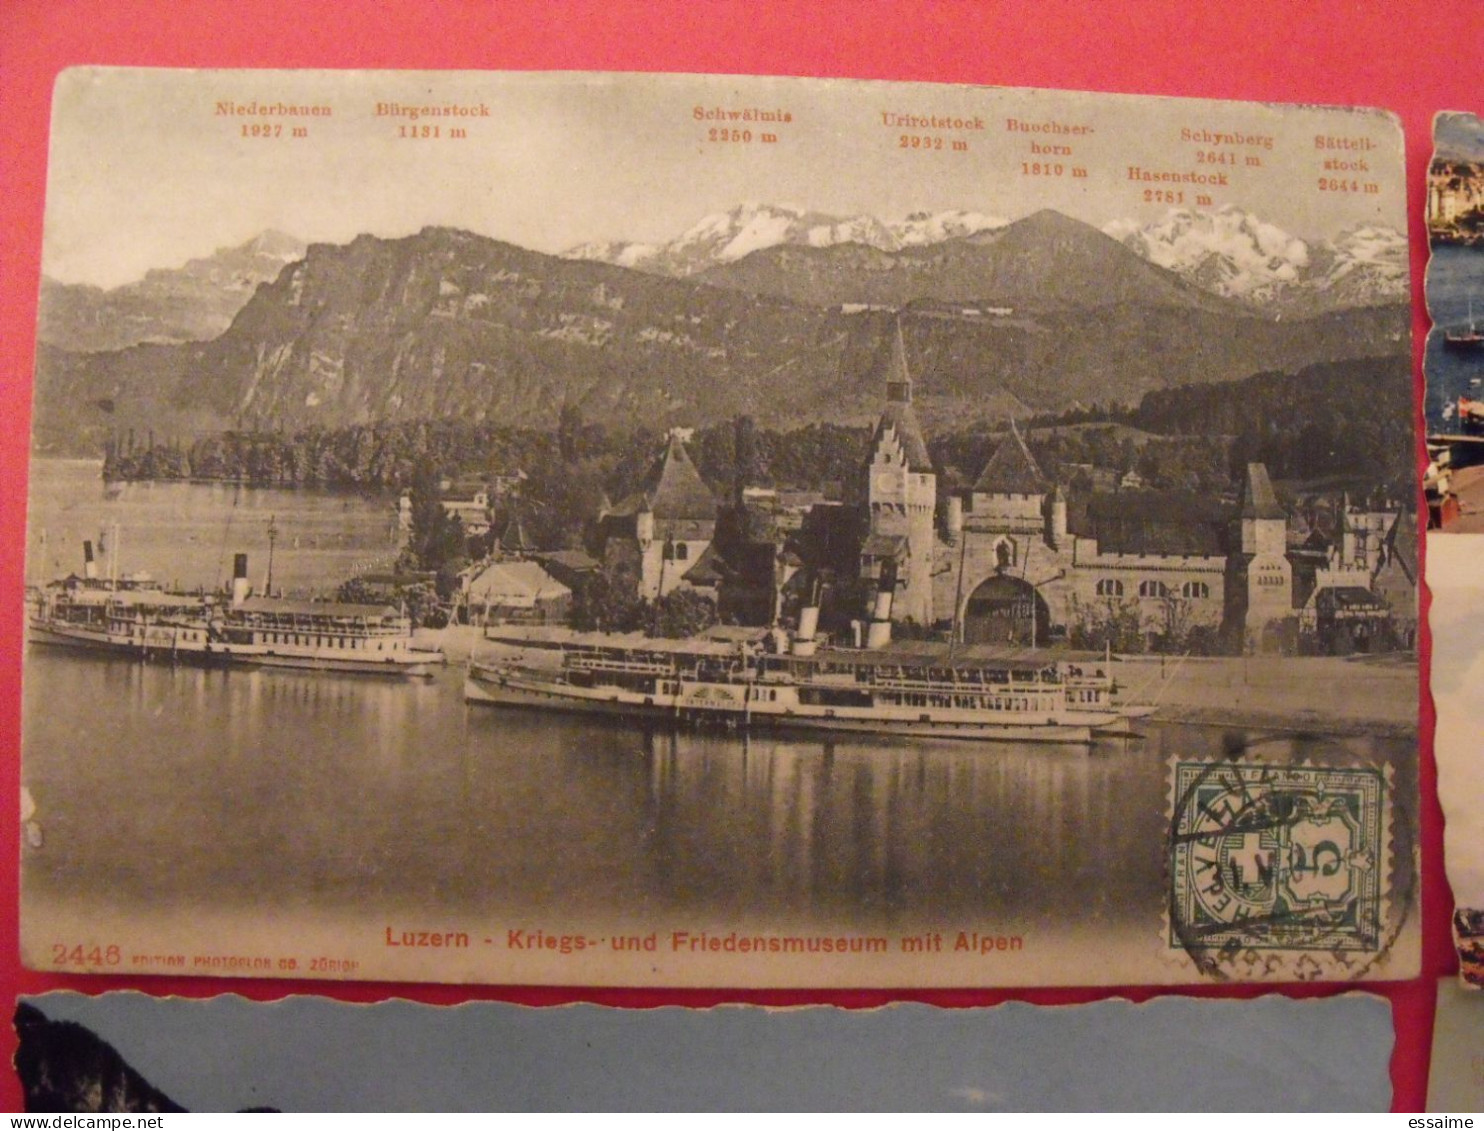 Lot De 8 Cartes Postales. Suisse. Rheinfall Spiez Genève Zurich Lac Léman Lausanne Ouchy Luzern - Colecciones Y Lotes